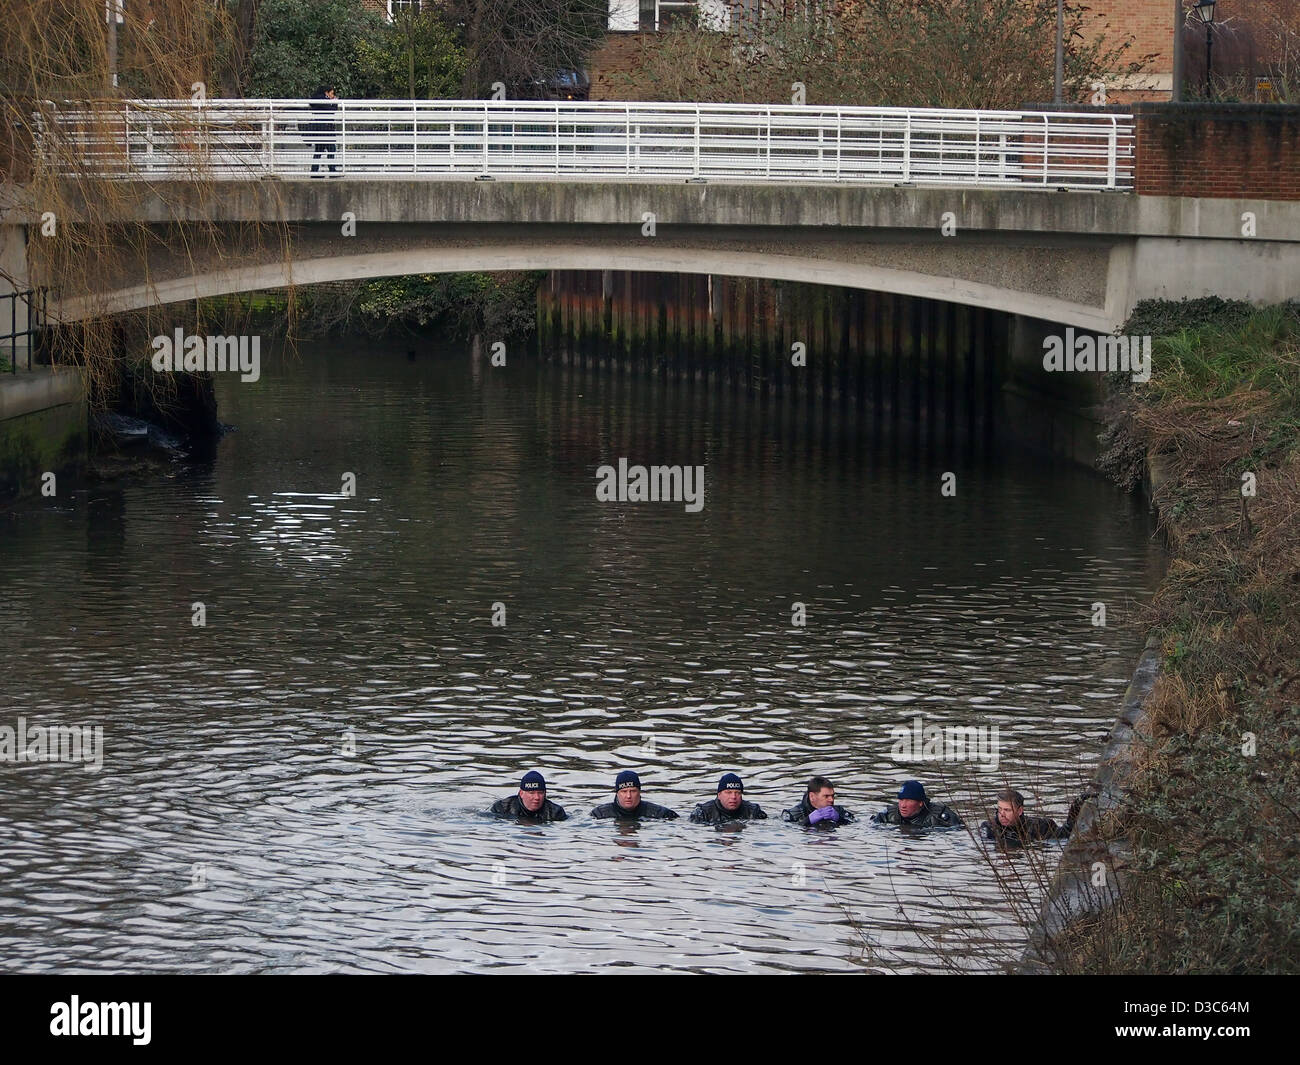 Recherche de personne disparue, la police le long du canal à Brentford. Banque D'Images